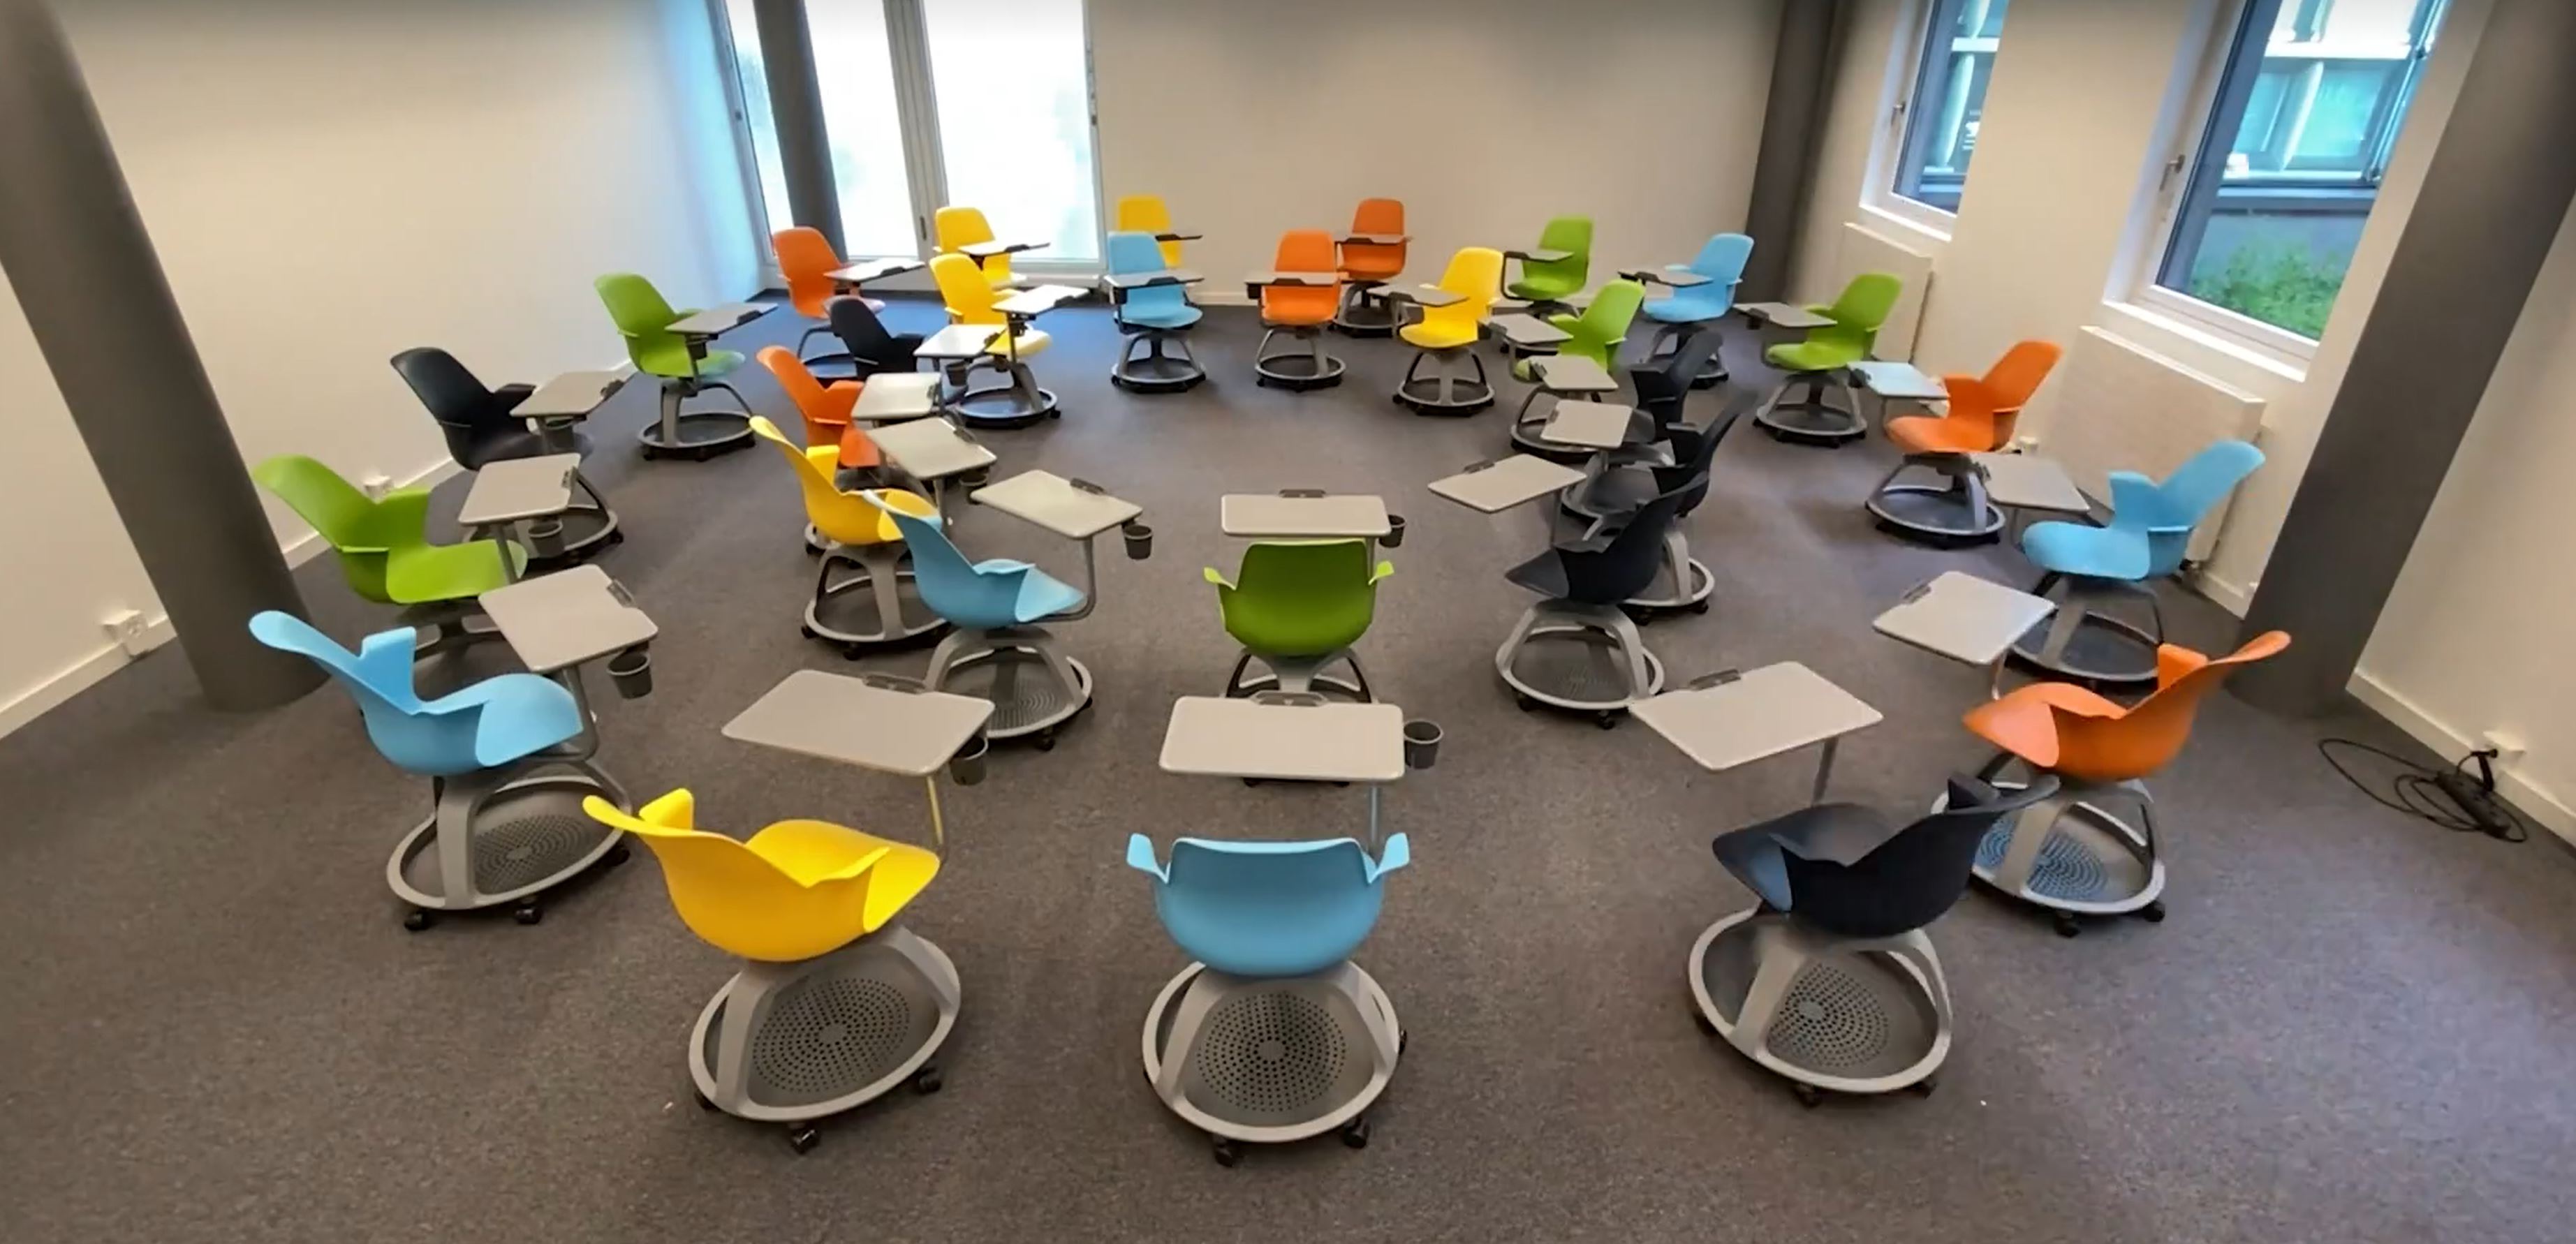 Die flexiblen Stühle sind frei beweglich und haben einen eigenen Tisch, so dass der Lehrraum umgestaltet werden kann.